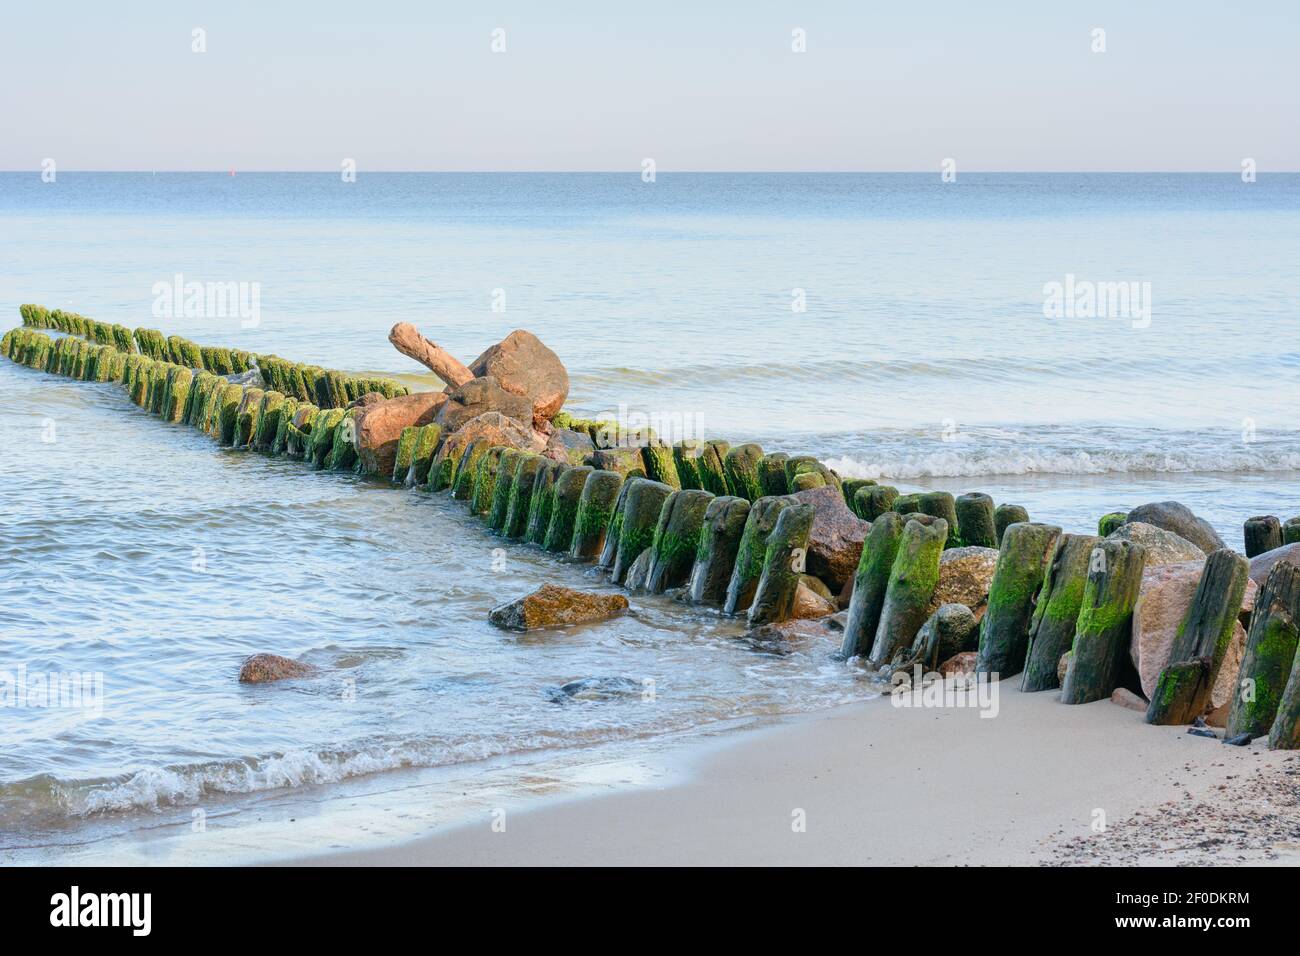 Côte de la mer Baltique en soirée. Grand vieux brise-lames, piles en bois recouvertes d'algues vertes. Magnifique paysage marin. Mise au point sélective. Banque D'Images